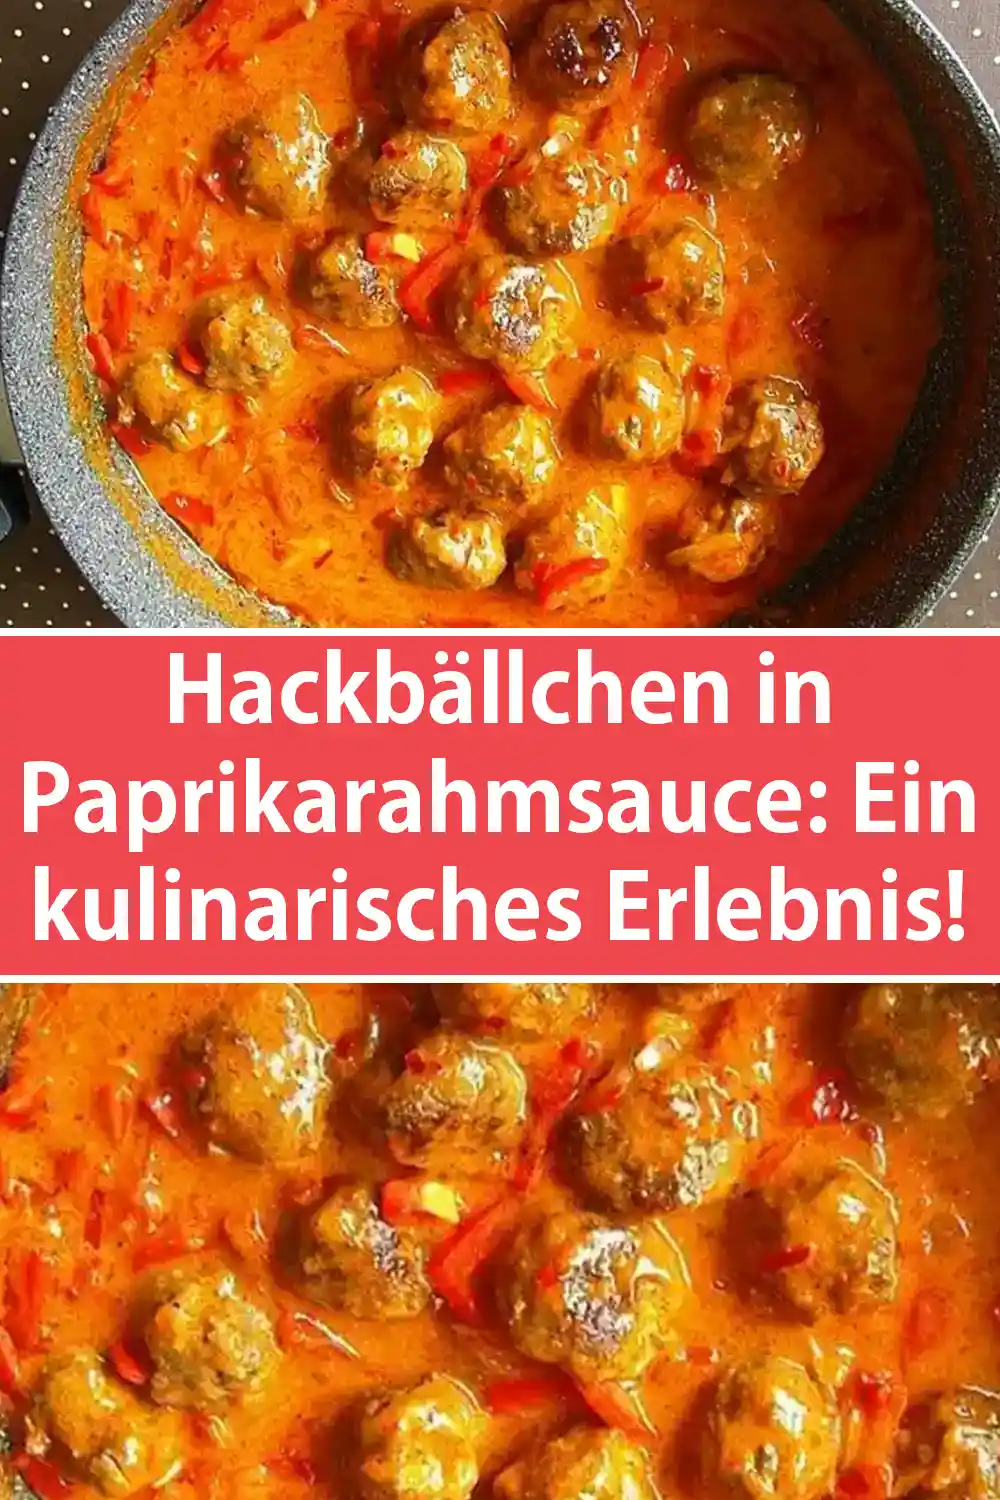 Hackbällchen in Paprikarahmsauce - Ein kulinarisches Erlebnis!